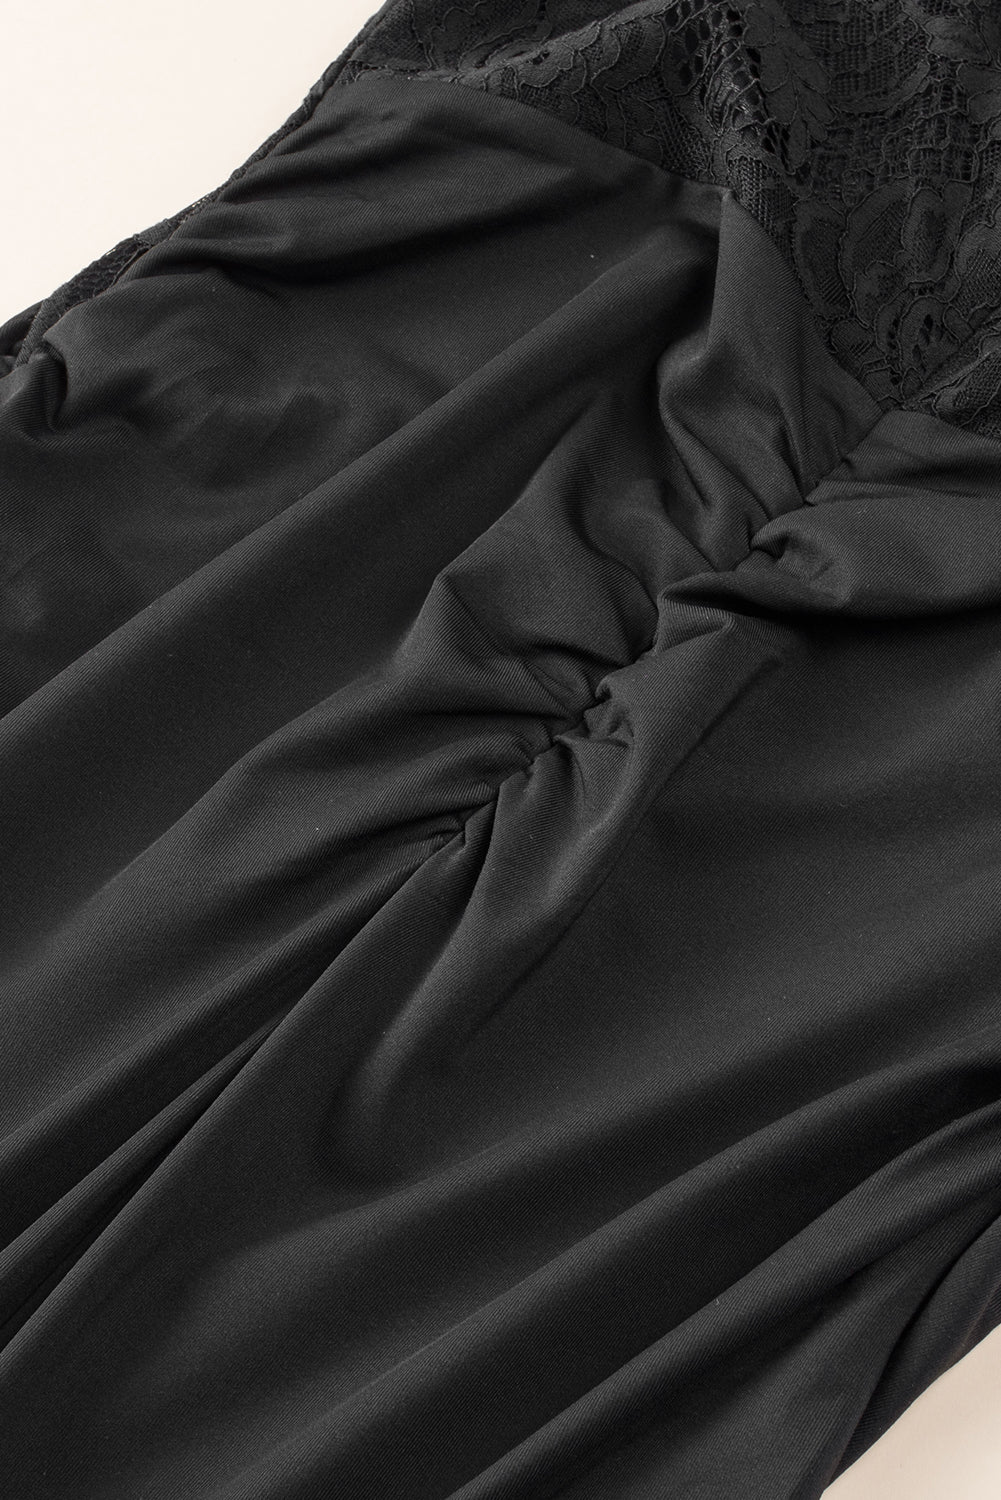 Black Lace Plus Size Dress